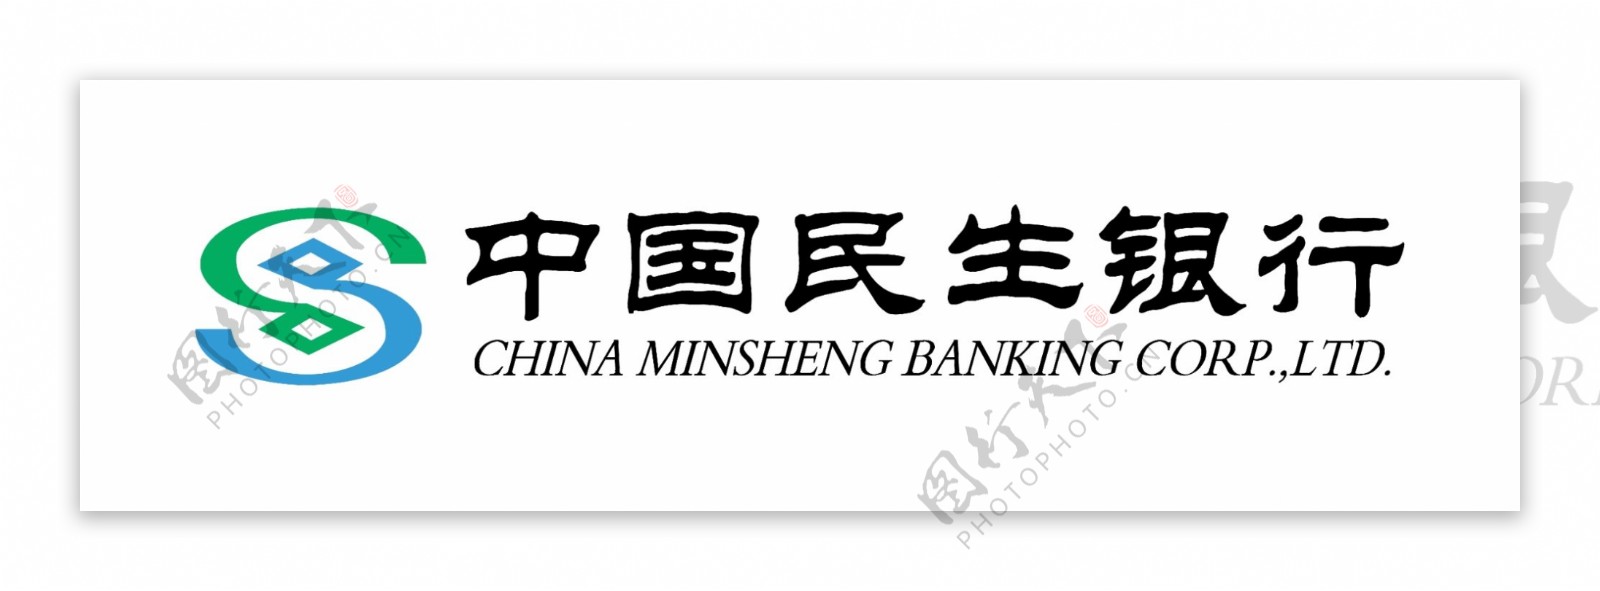 中国民生银行标志图片